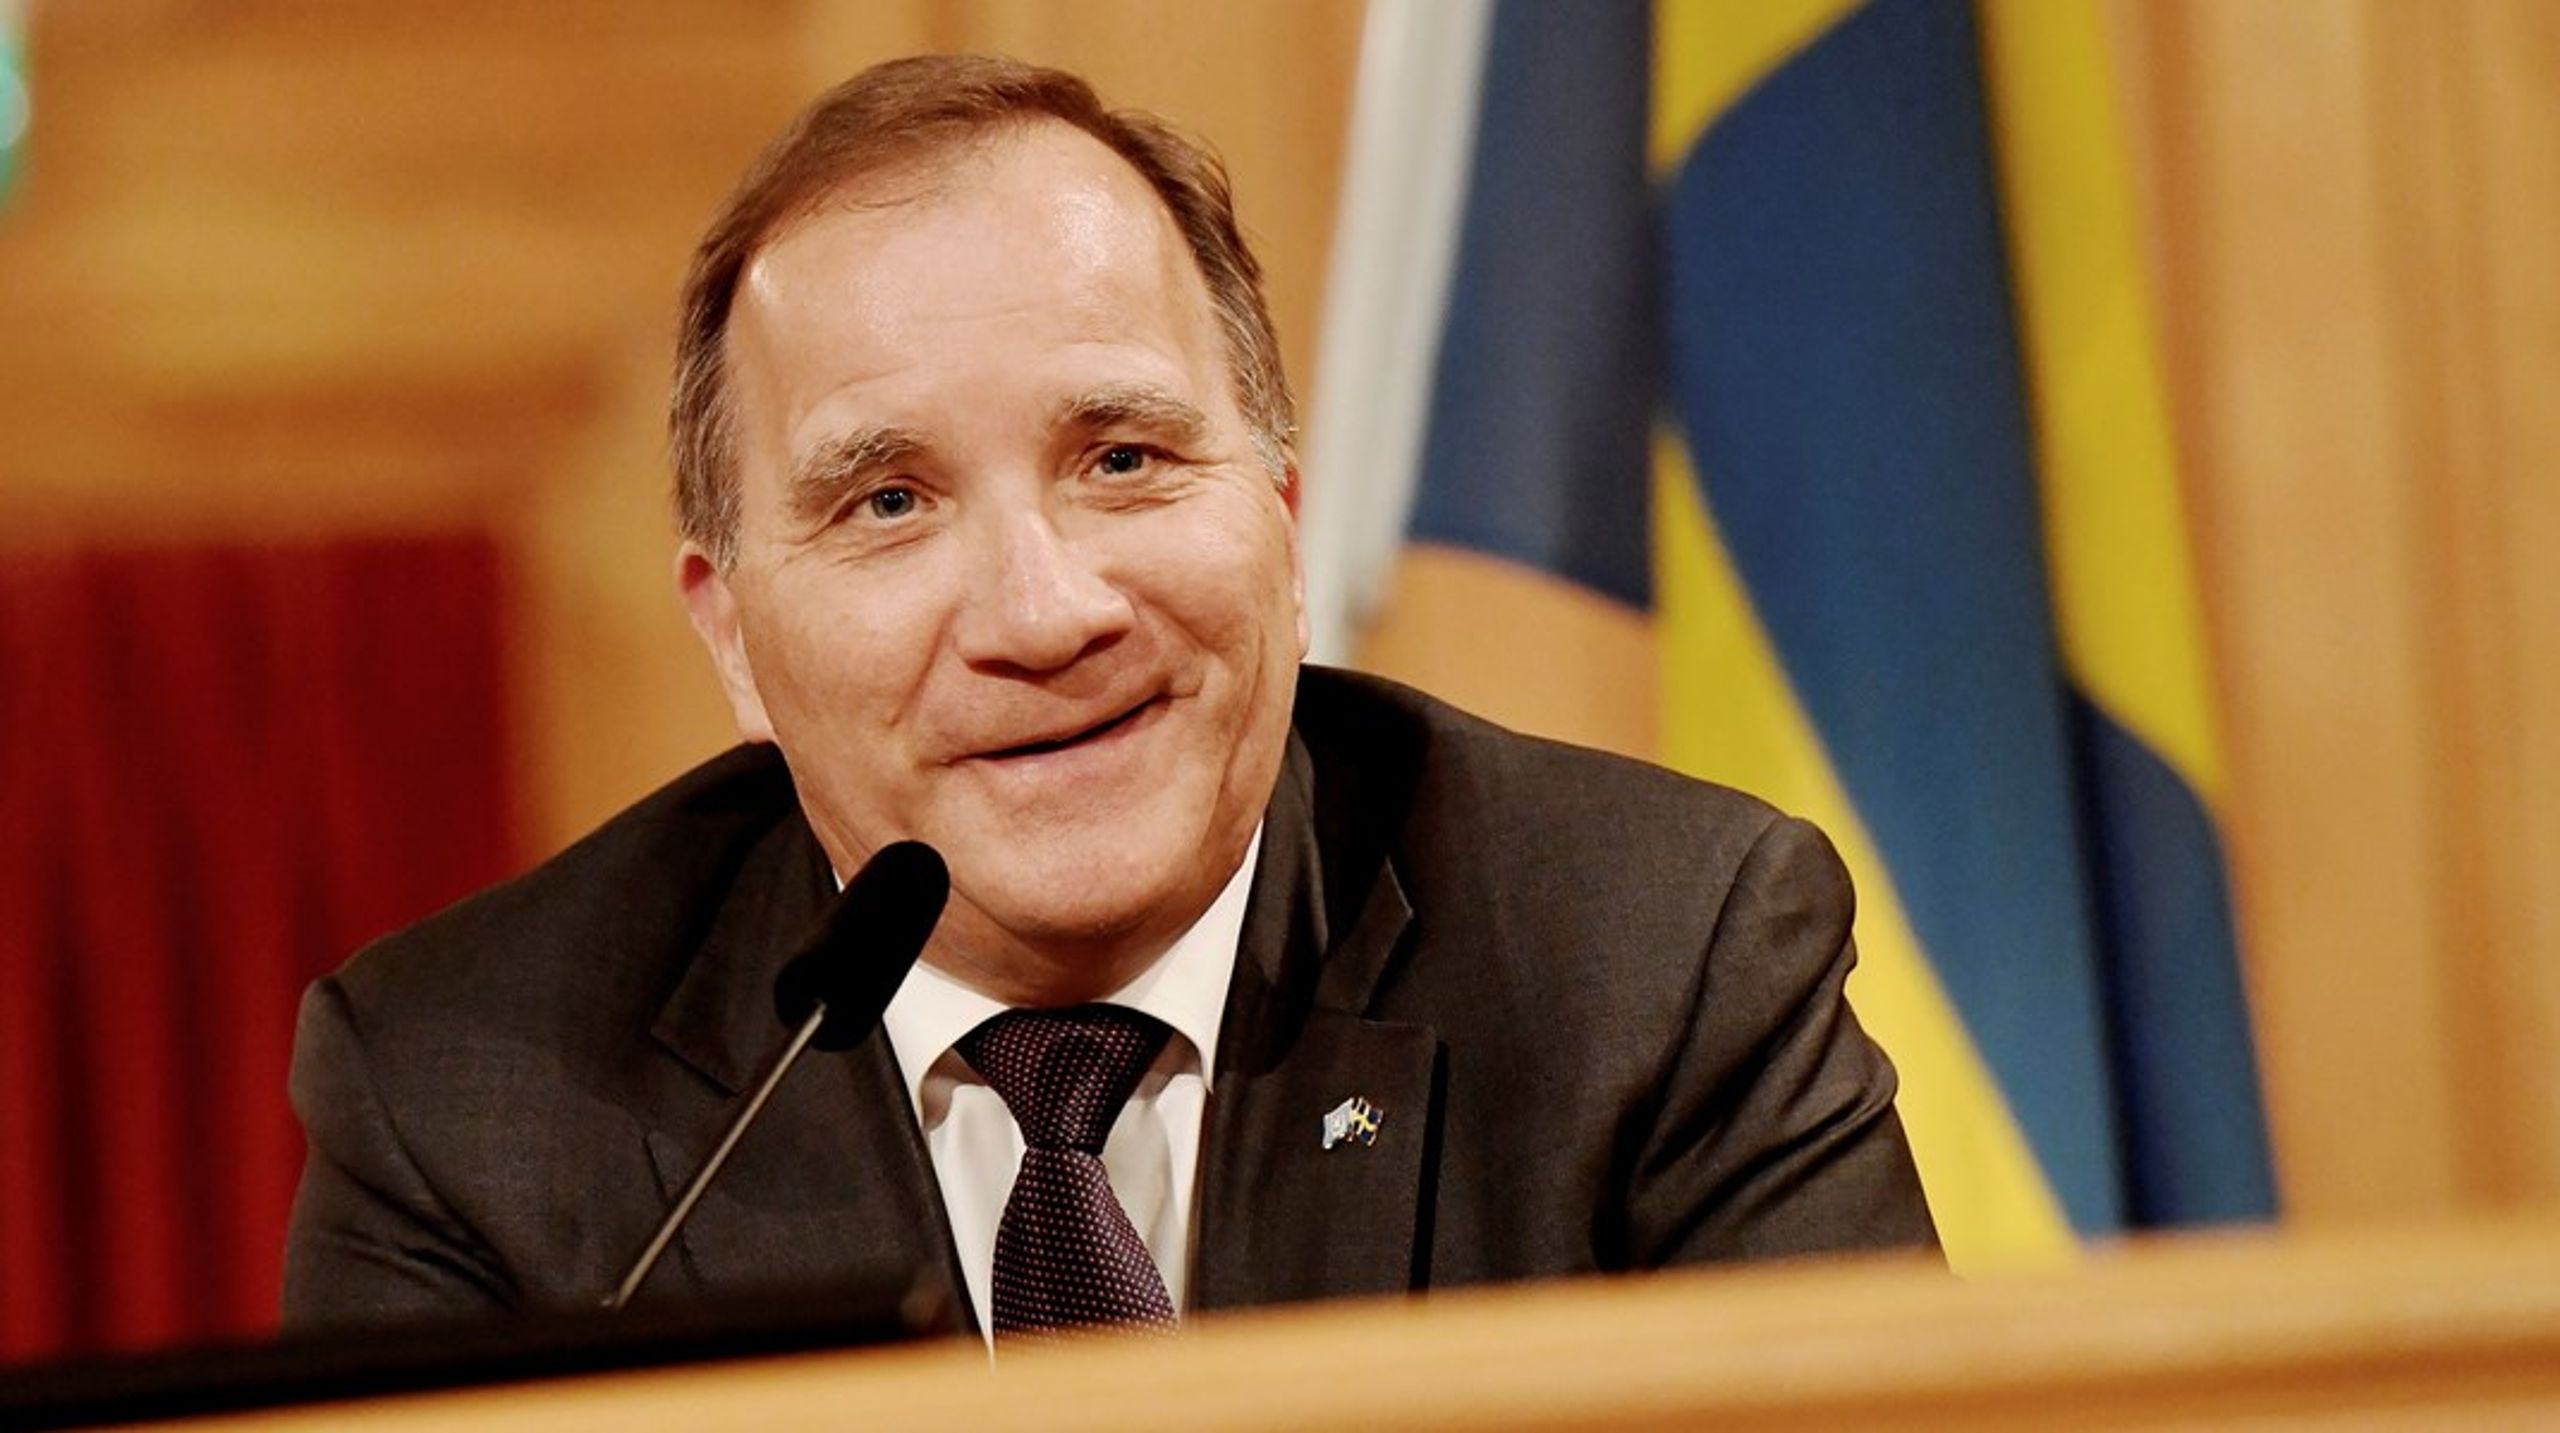 173 af Riksdagens medlemmer stemte imod Stefan Löfven onsdag, men det er lige nok til, at han kan fortsætte som statsminister.